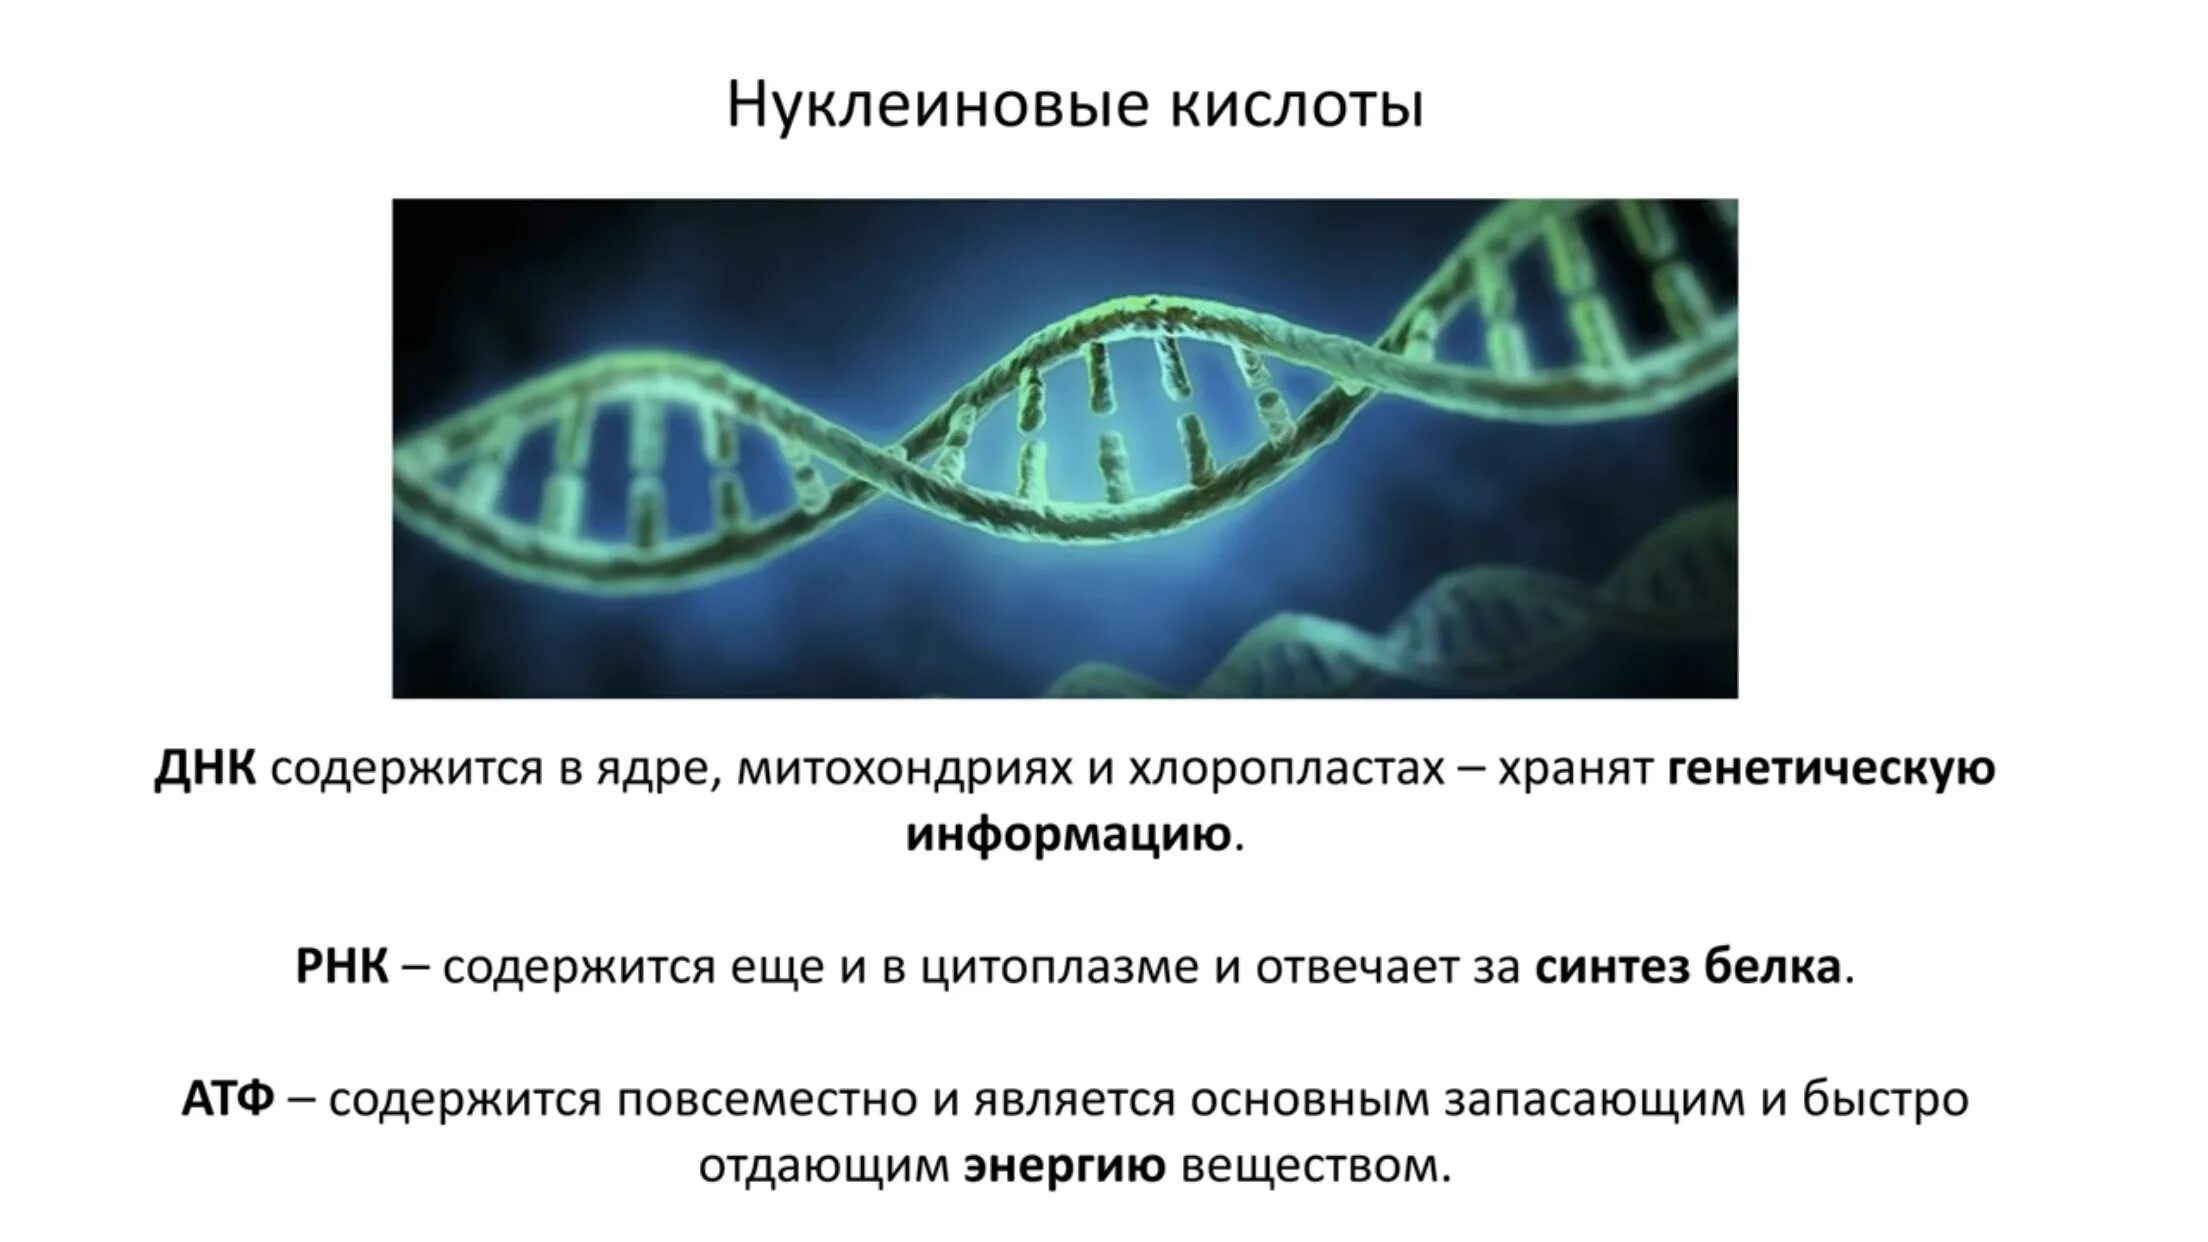 Хлоропласты синтез белка. Кольцевая ДНК В хлоропластах. В ядре содержатся нуклеиновые кислоты.